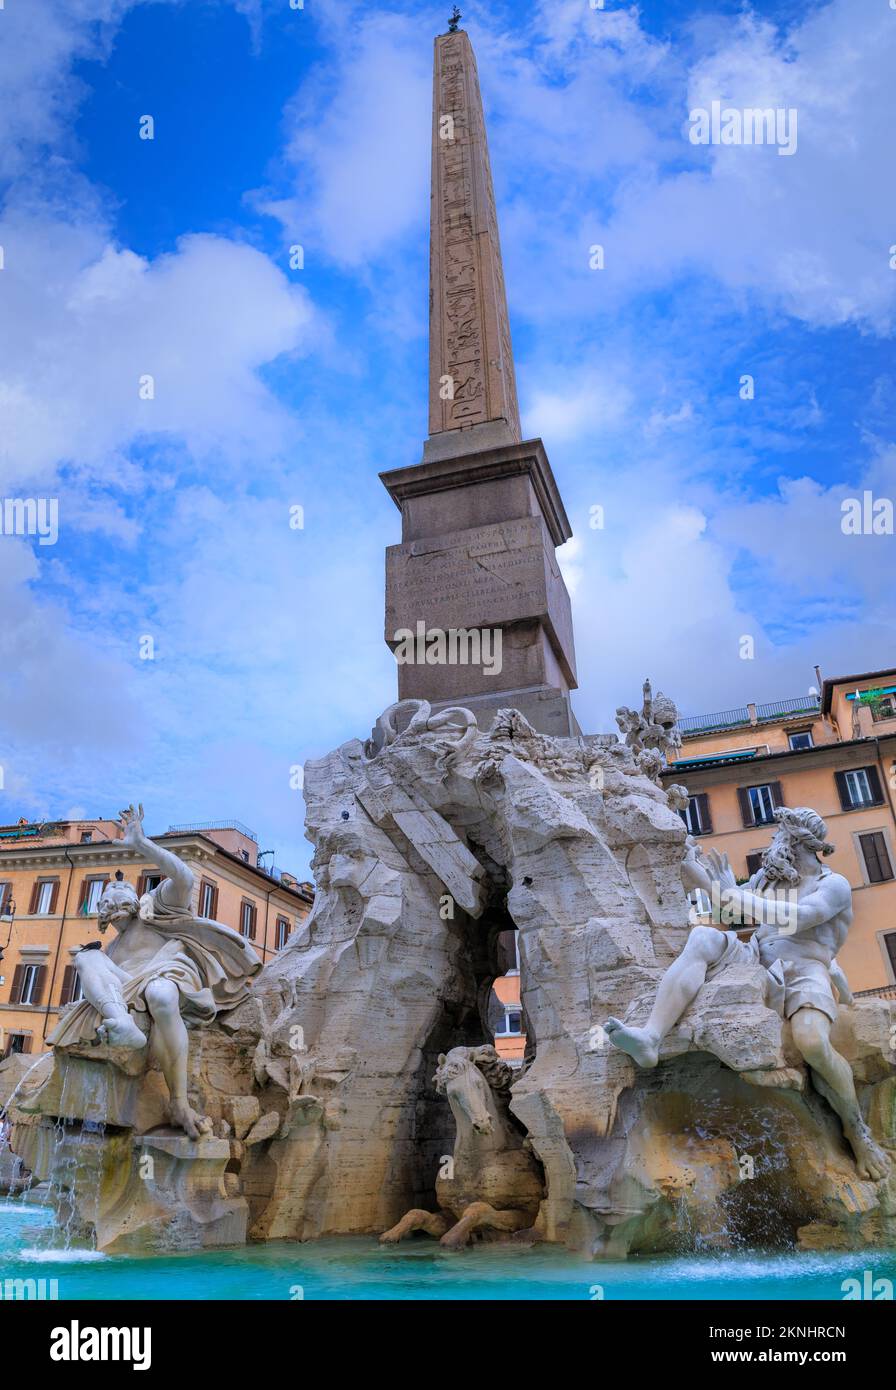 Vue urbaine de Rome, Italie: Fontaine des quatre fleuves (Fontana dei Quattro Fiumi) avec un obélisque égyptien sur la place Navon (Piazza Navona). Banque D'Images